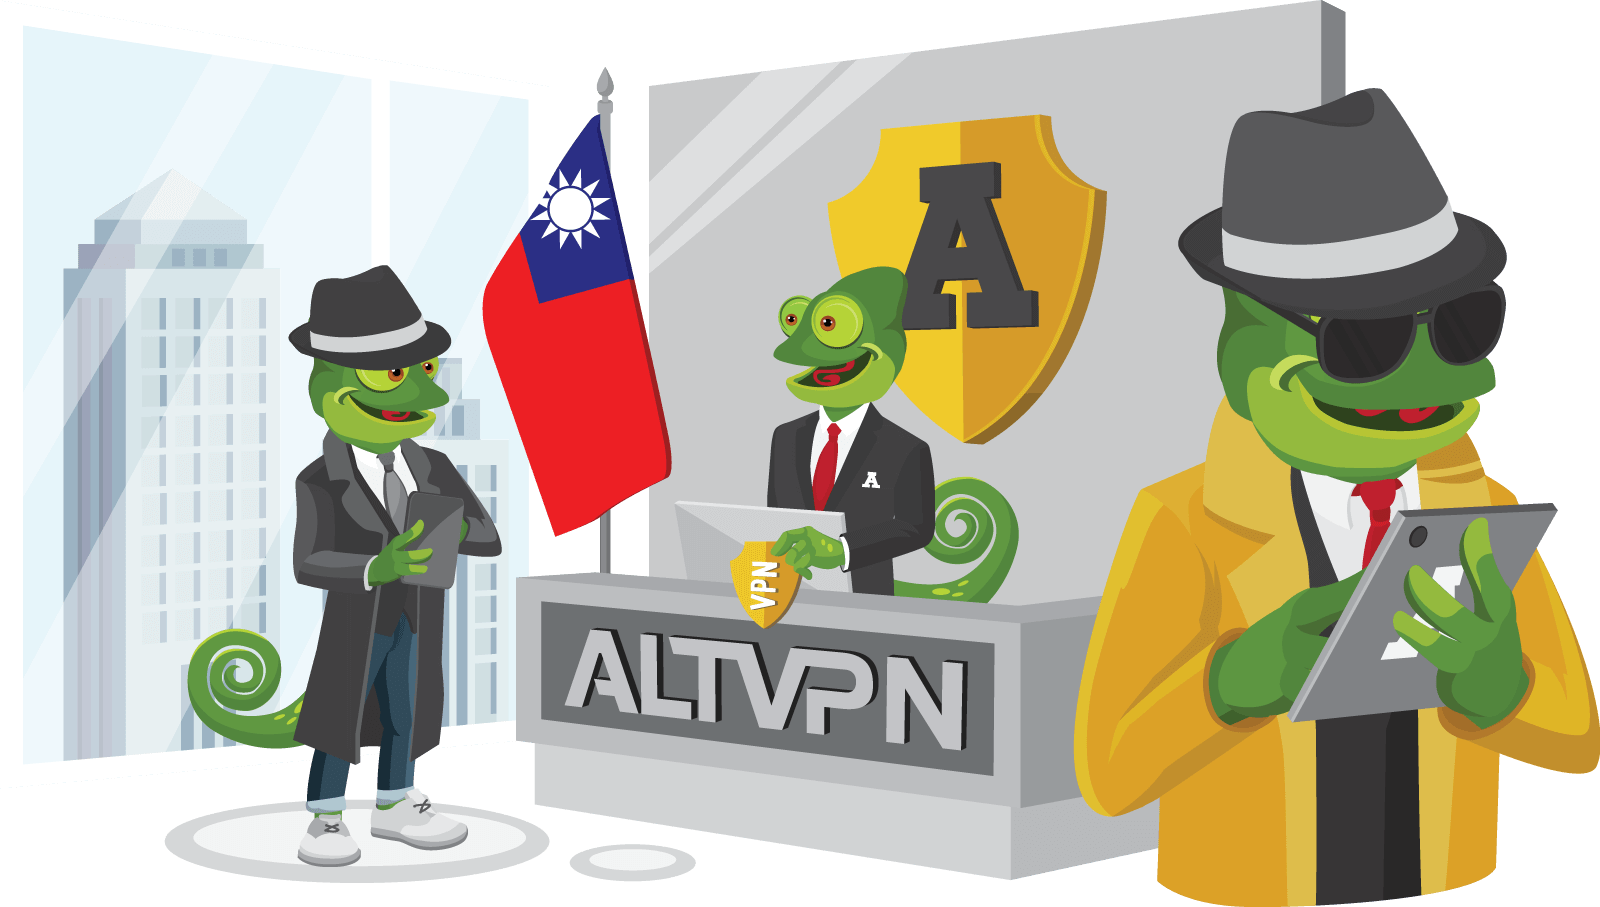 Buy VPN - ALTVPN